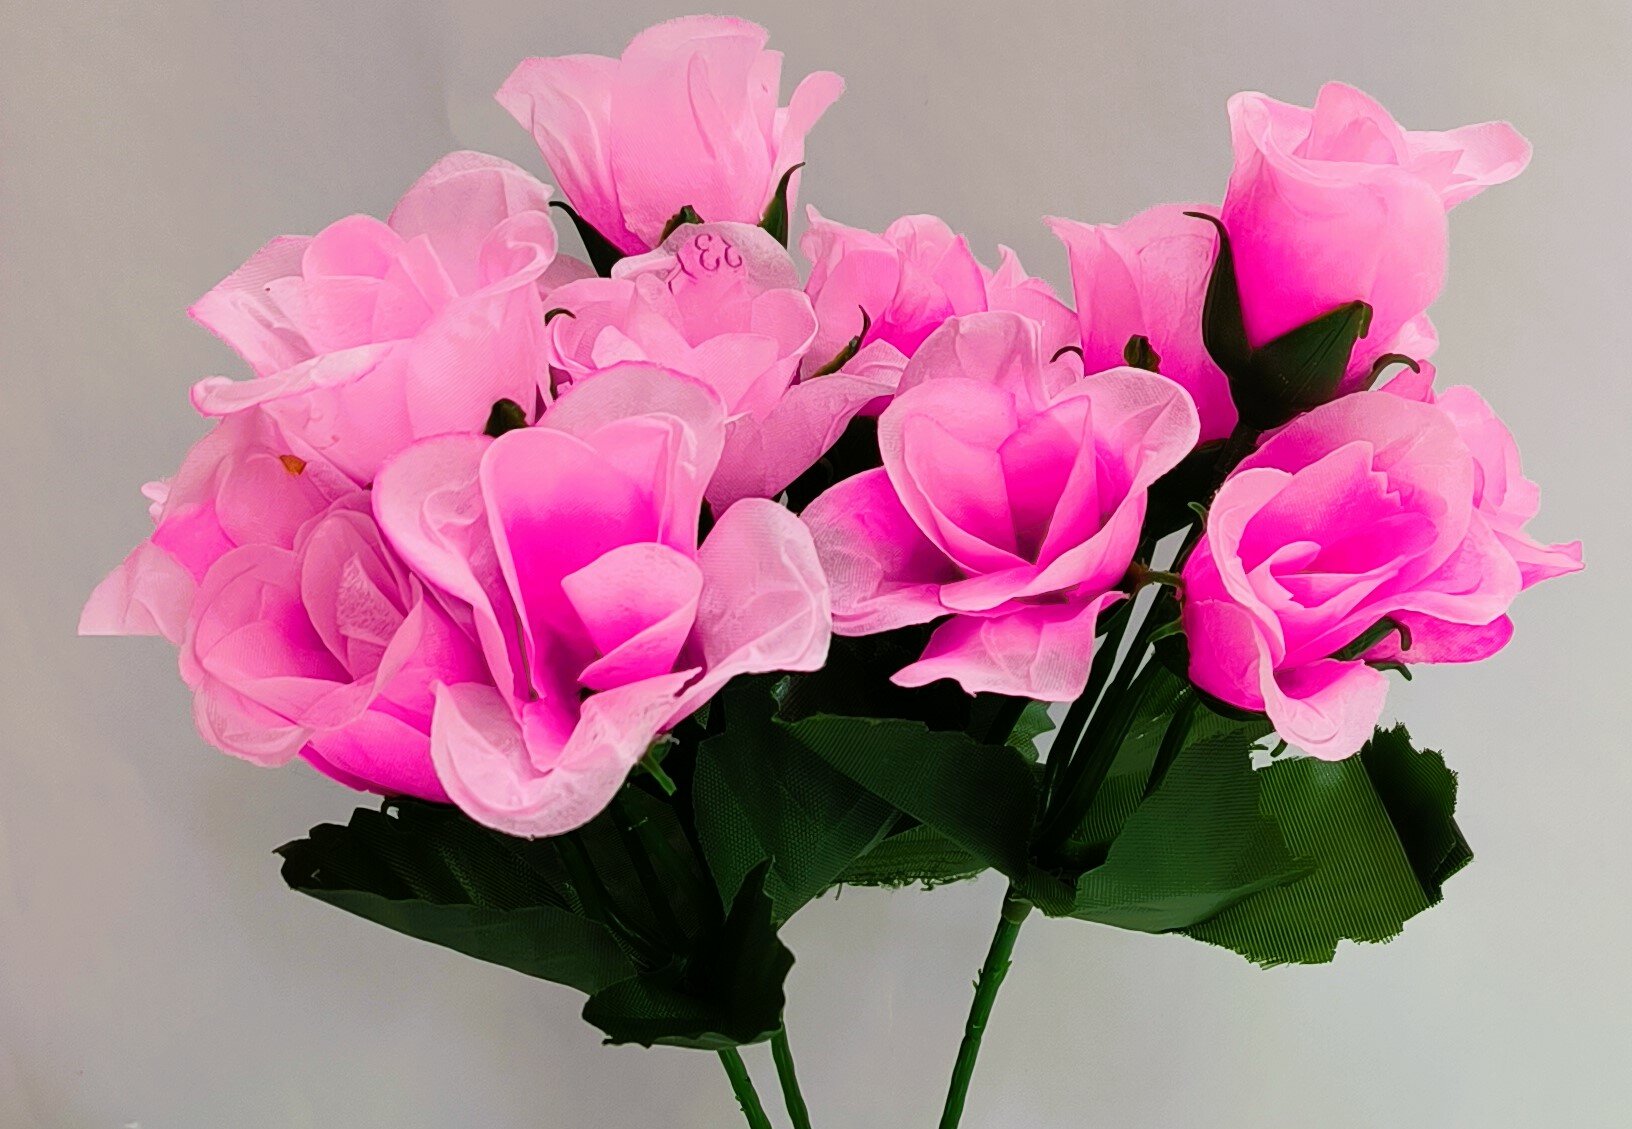 Розы розовые, 3 стебля высотой 22см, на каждом 5 бутонов диаметром 5 см